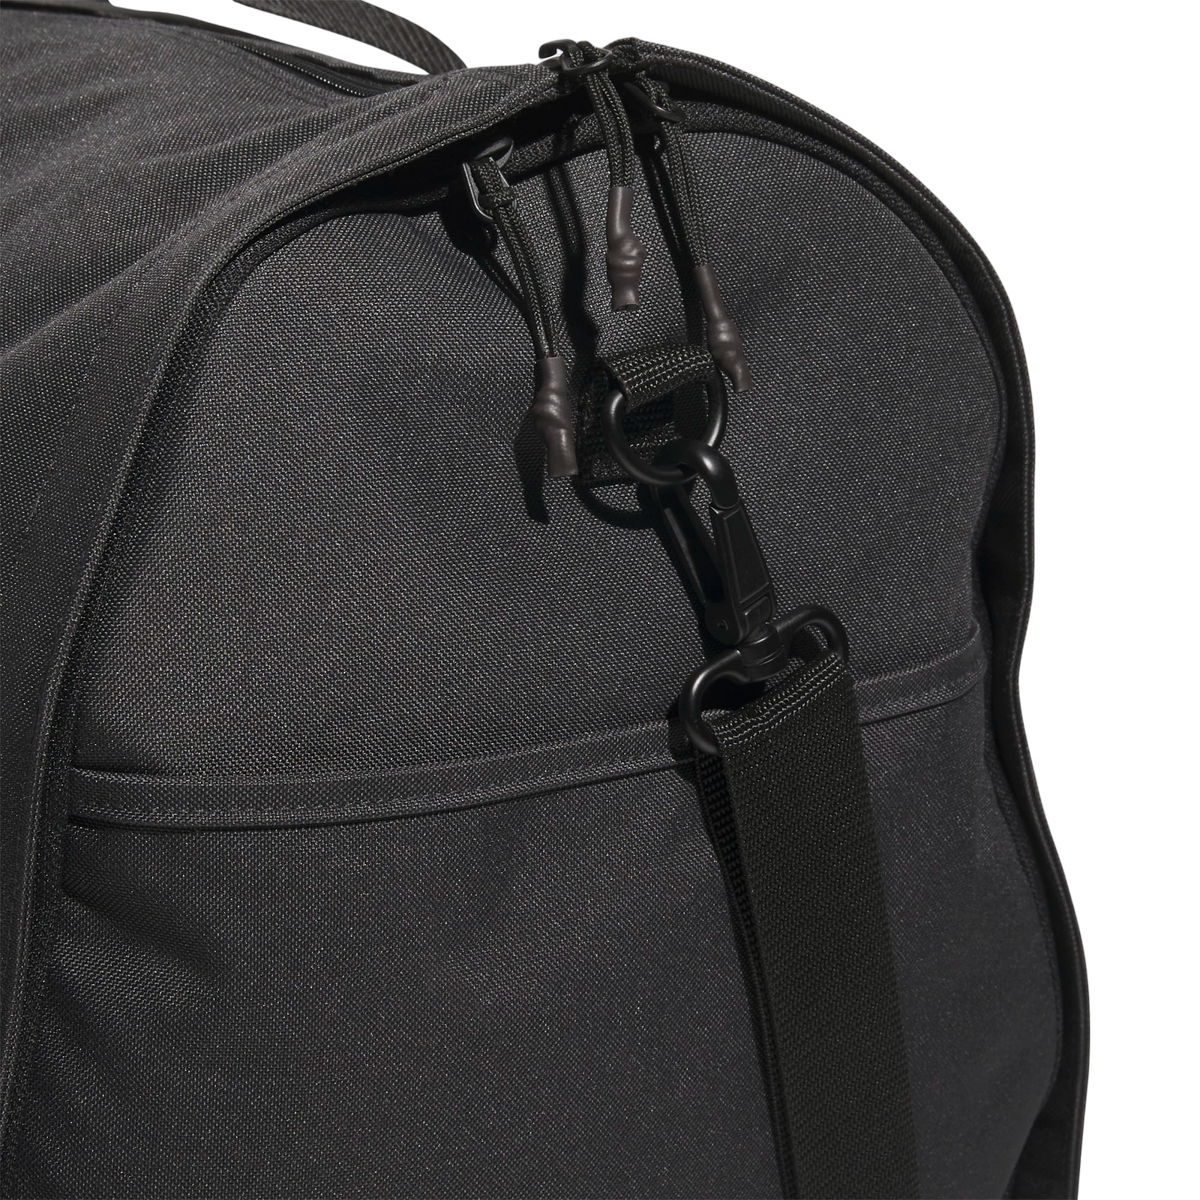 Adidas Premium Garment Duffel Bag